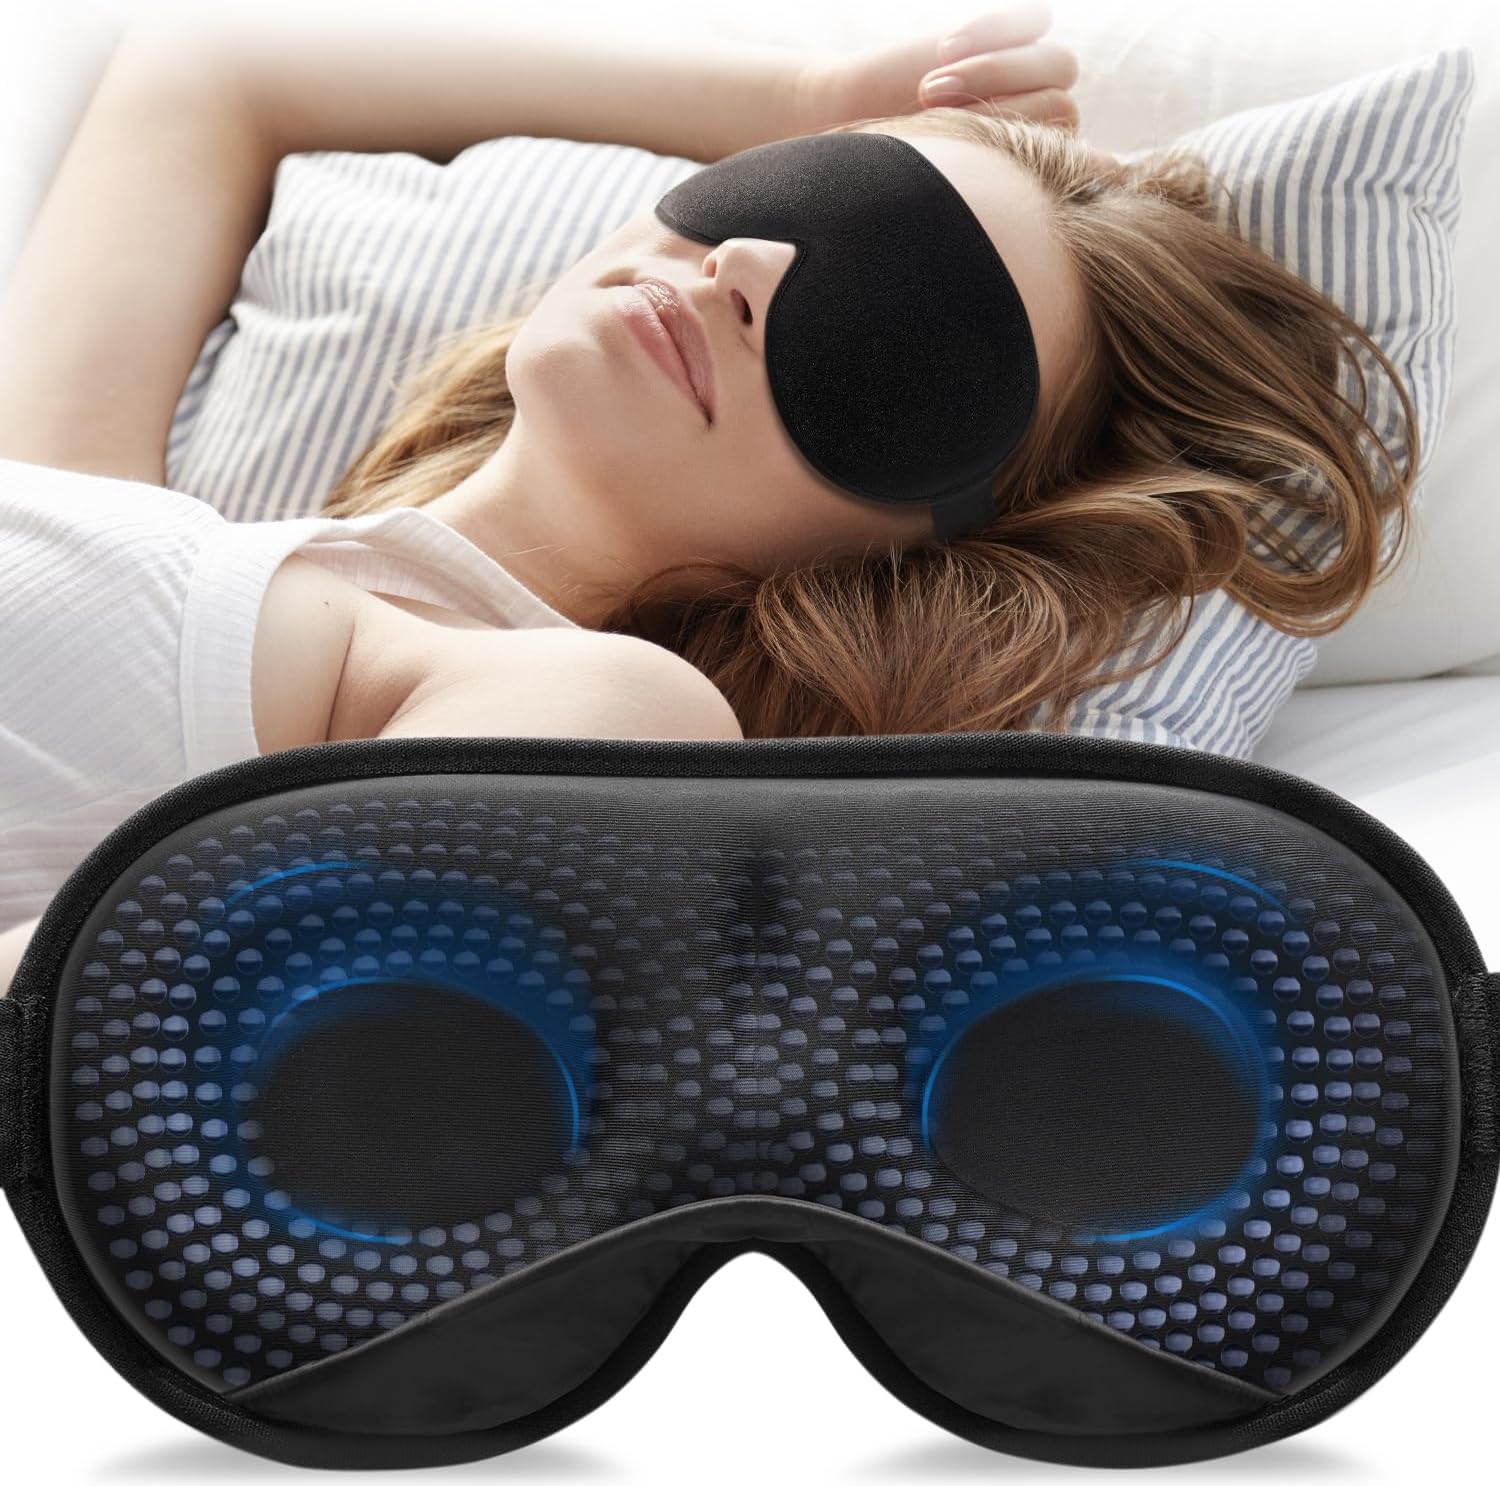 YFONG 3D Weighted Sleep Mask, (4.2oz/120g), Black